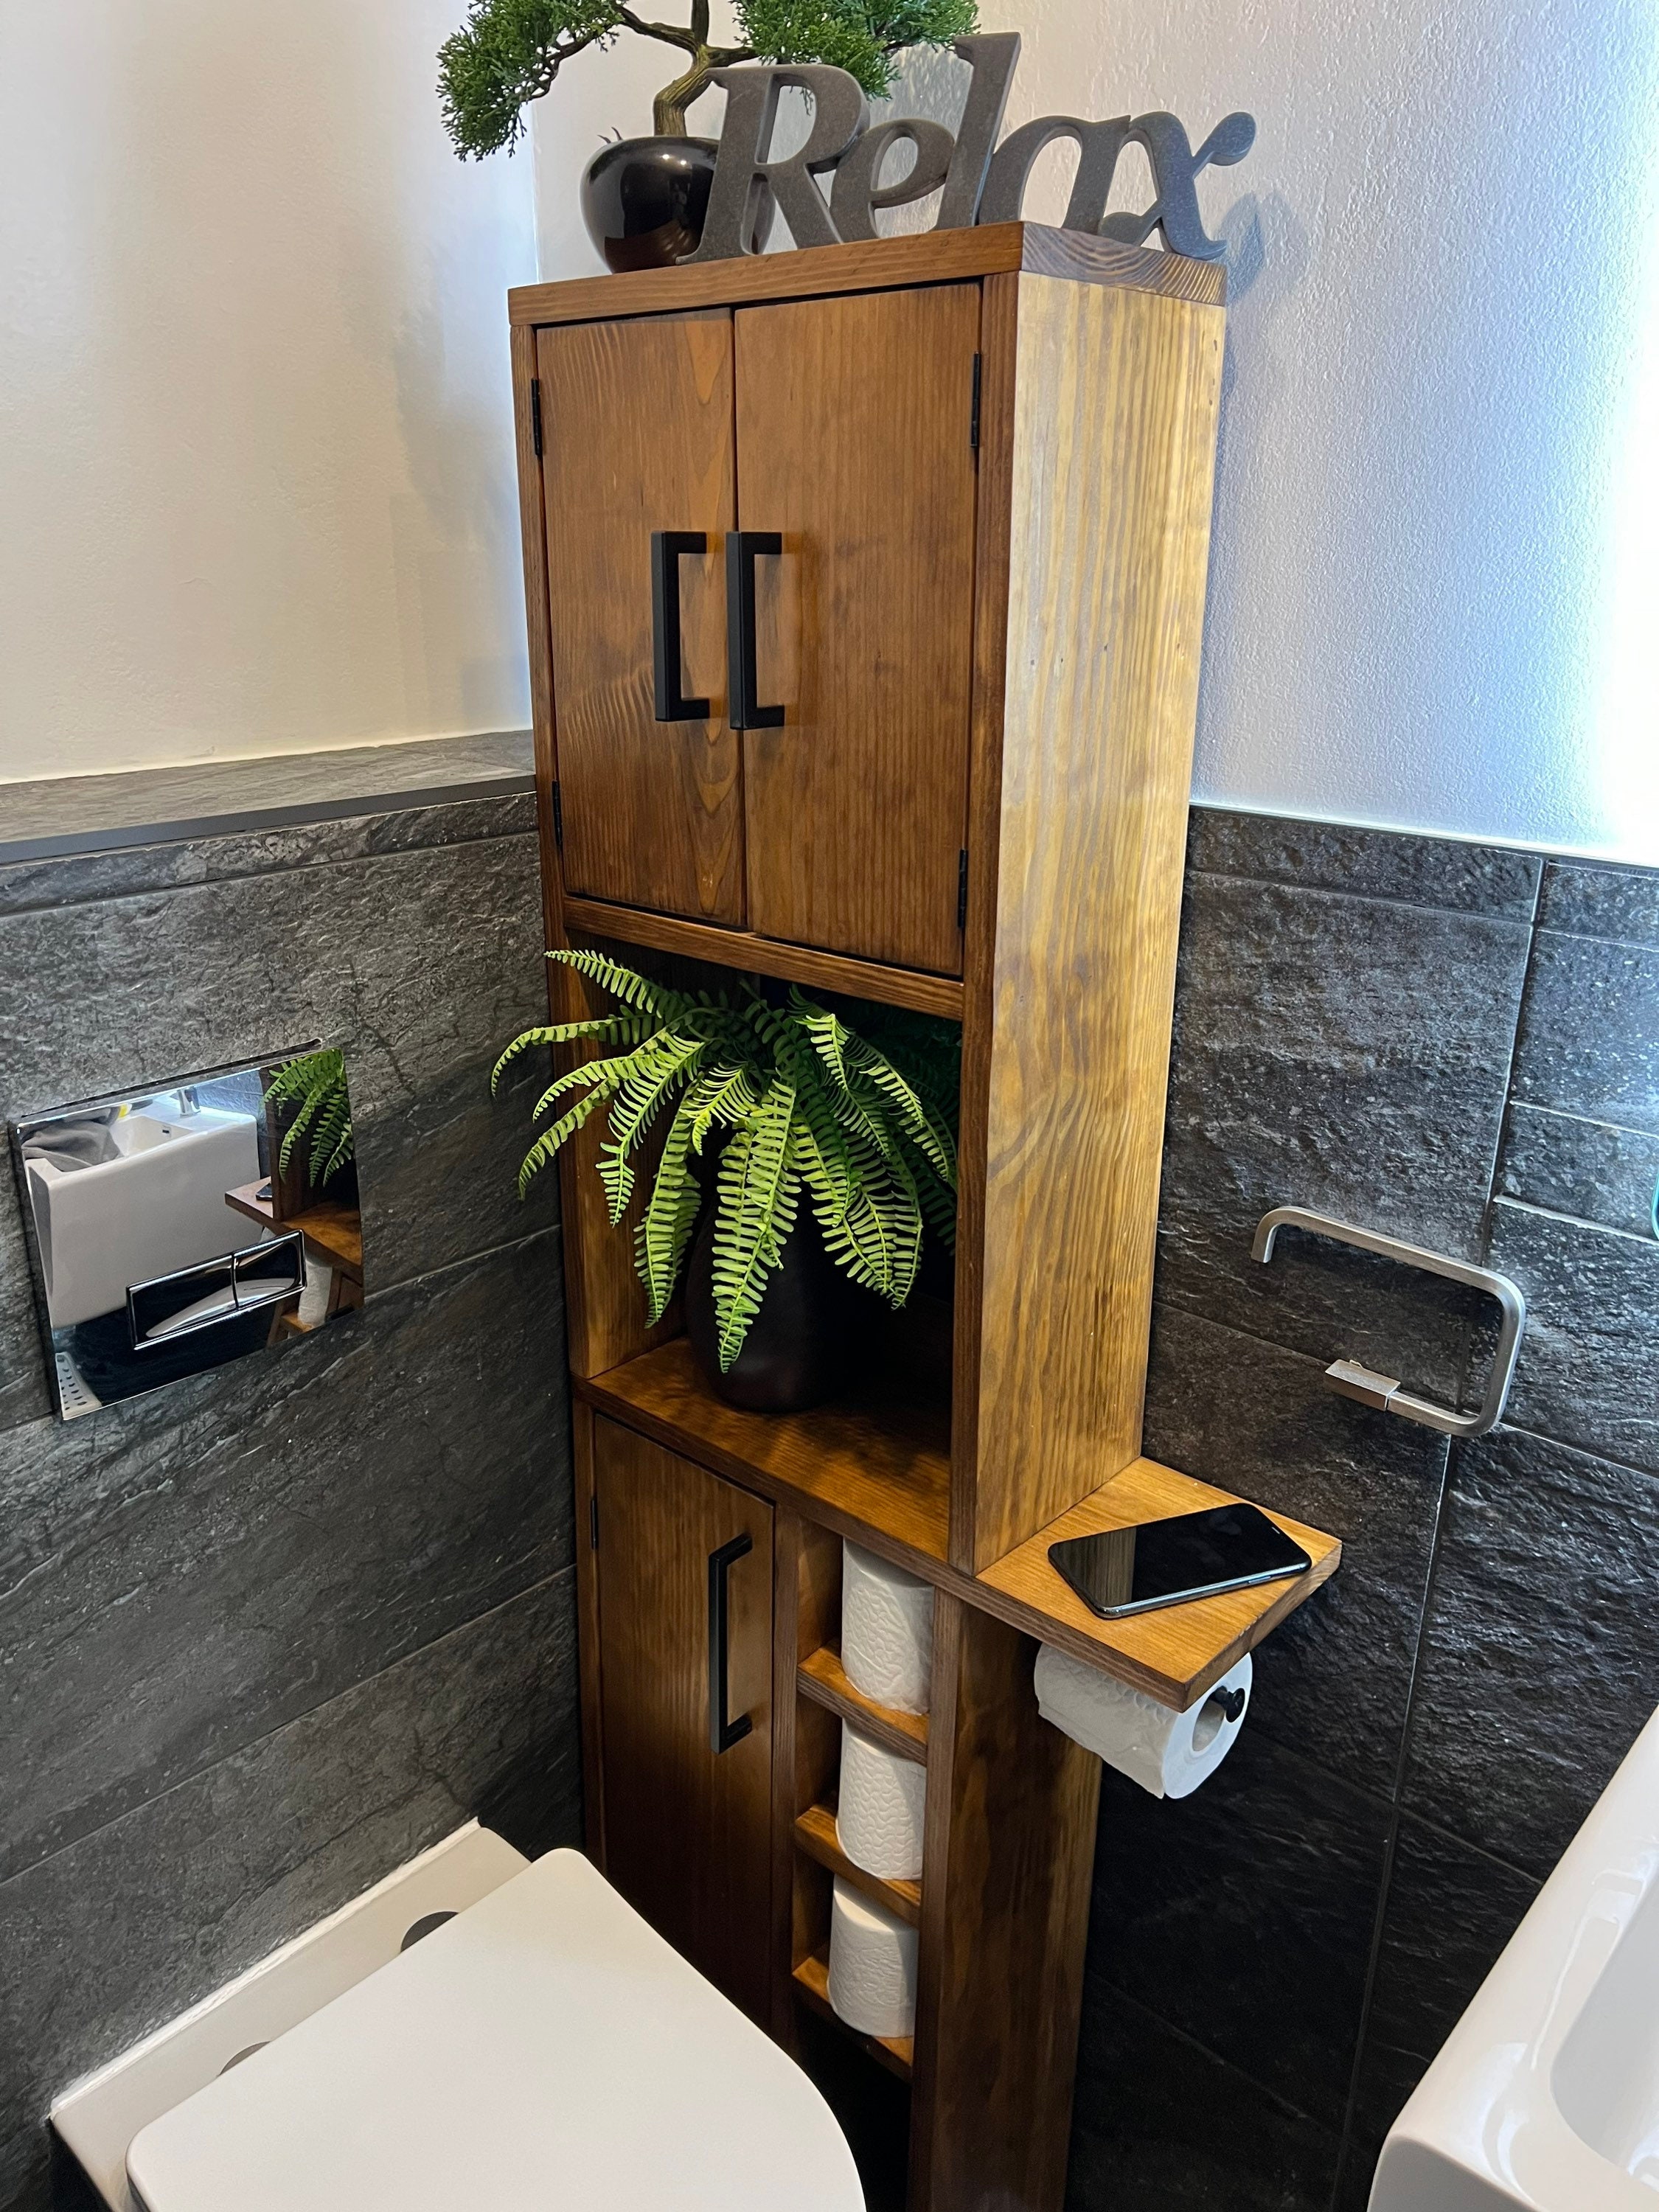 Wood Bathroom Toilet Paper Holder Table — Penn Rustics